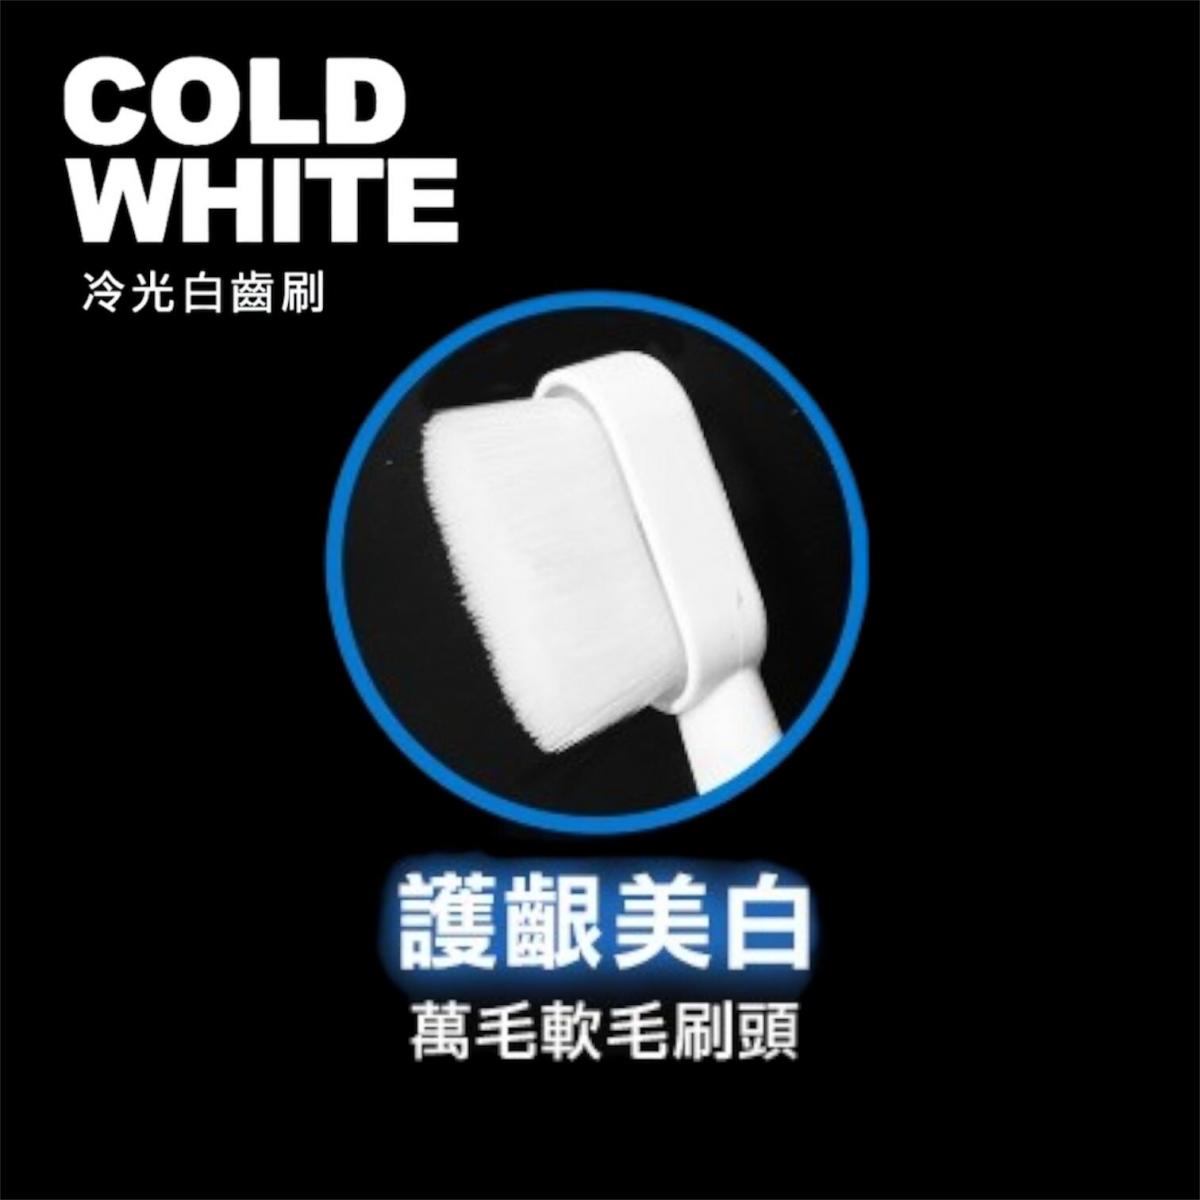 Future Lab - Cold White 冷光白齒刷專用 萬毛軟毛刷頭補充包 (3個)